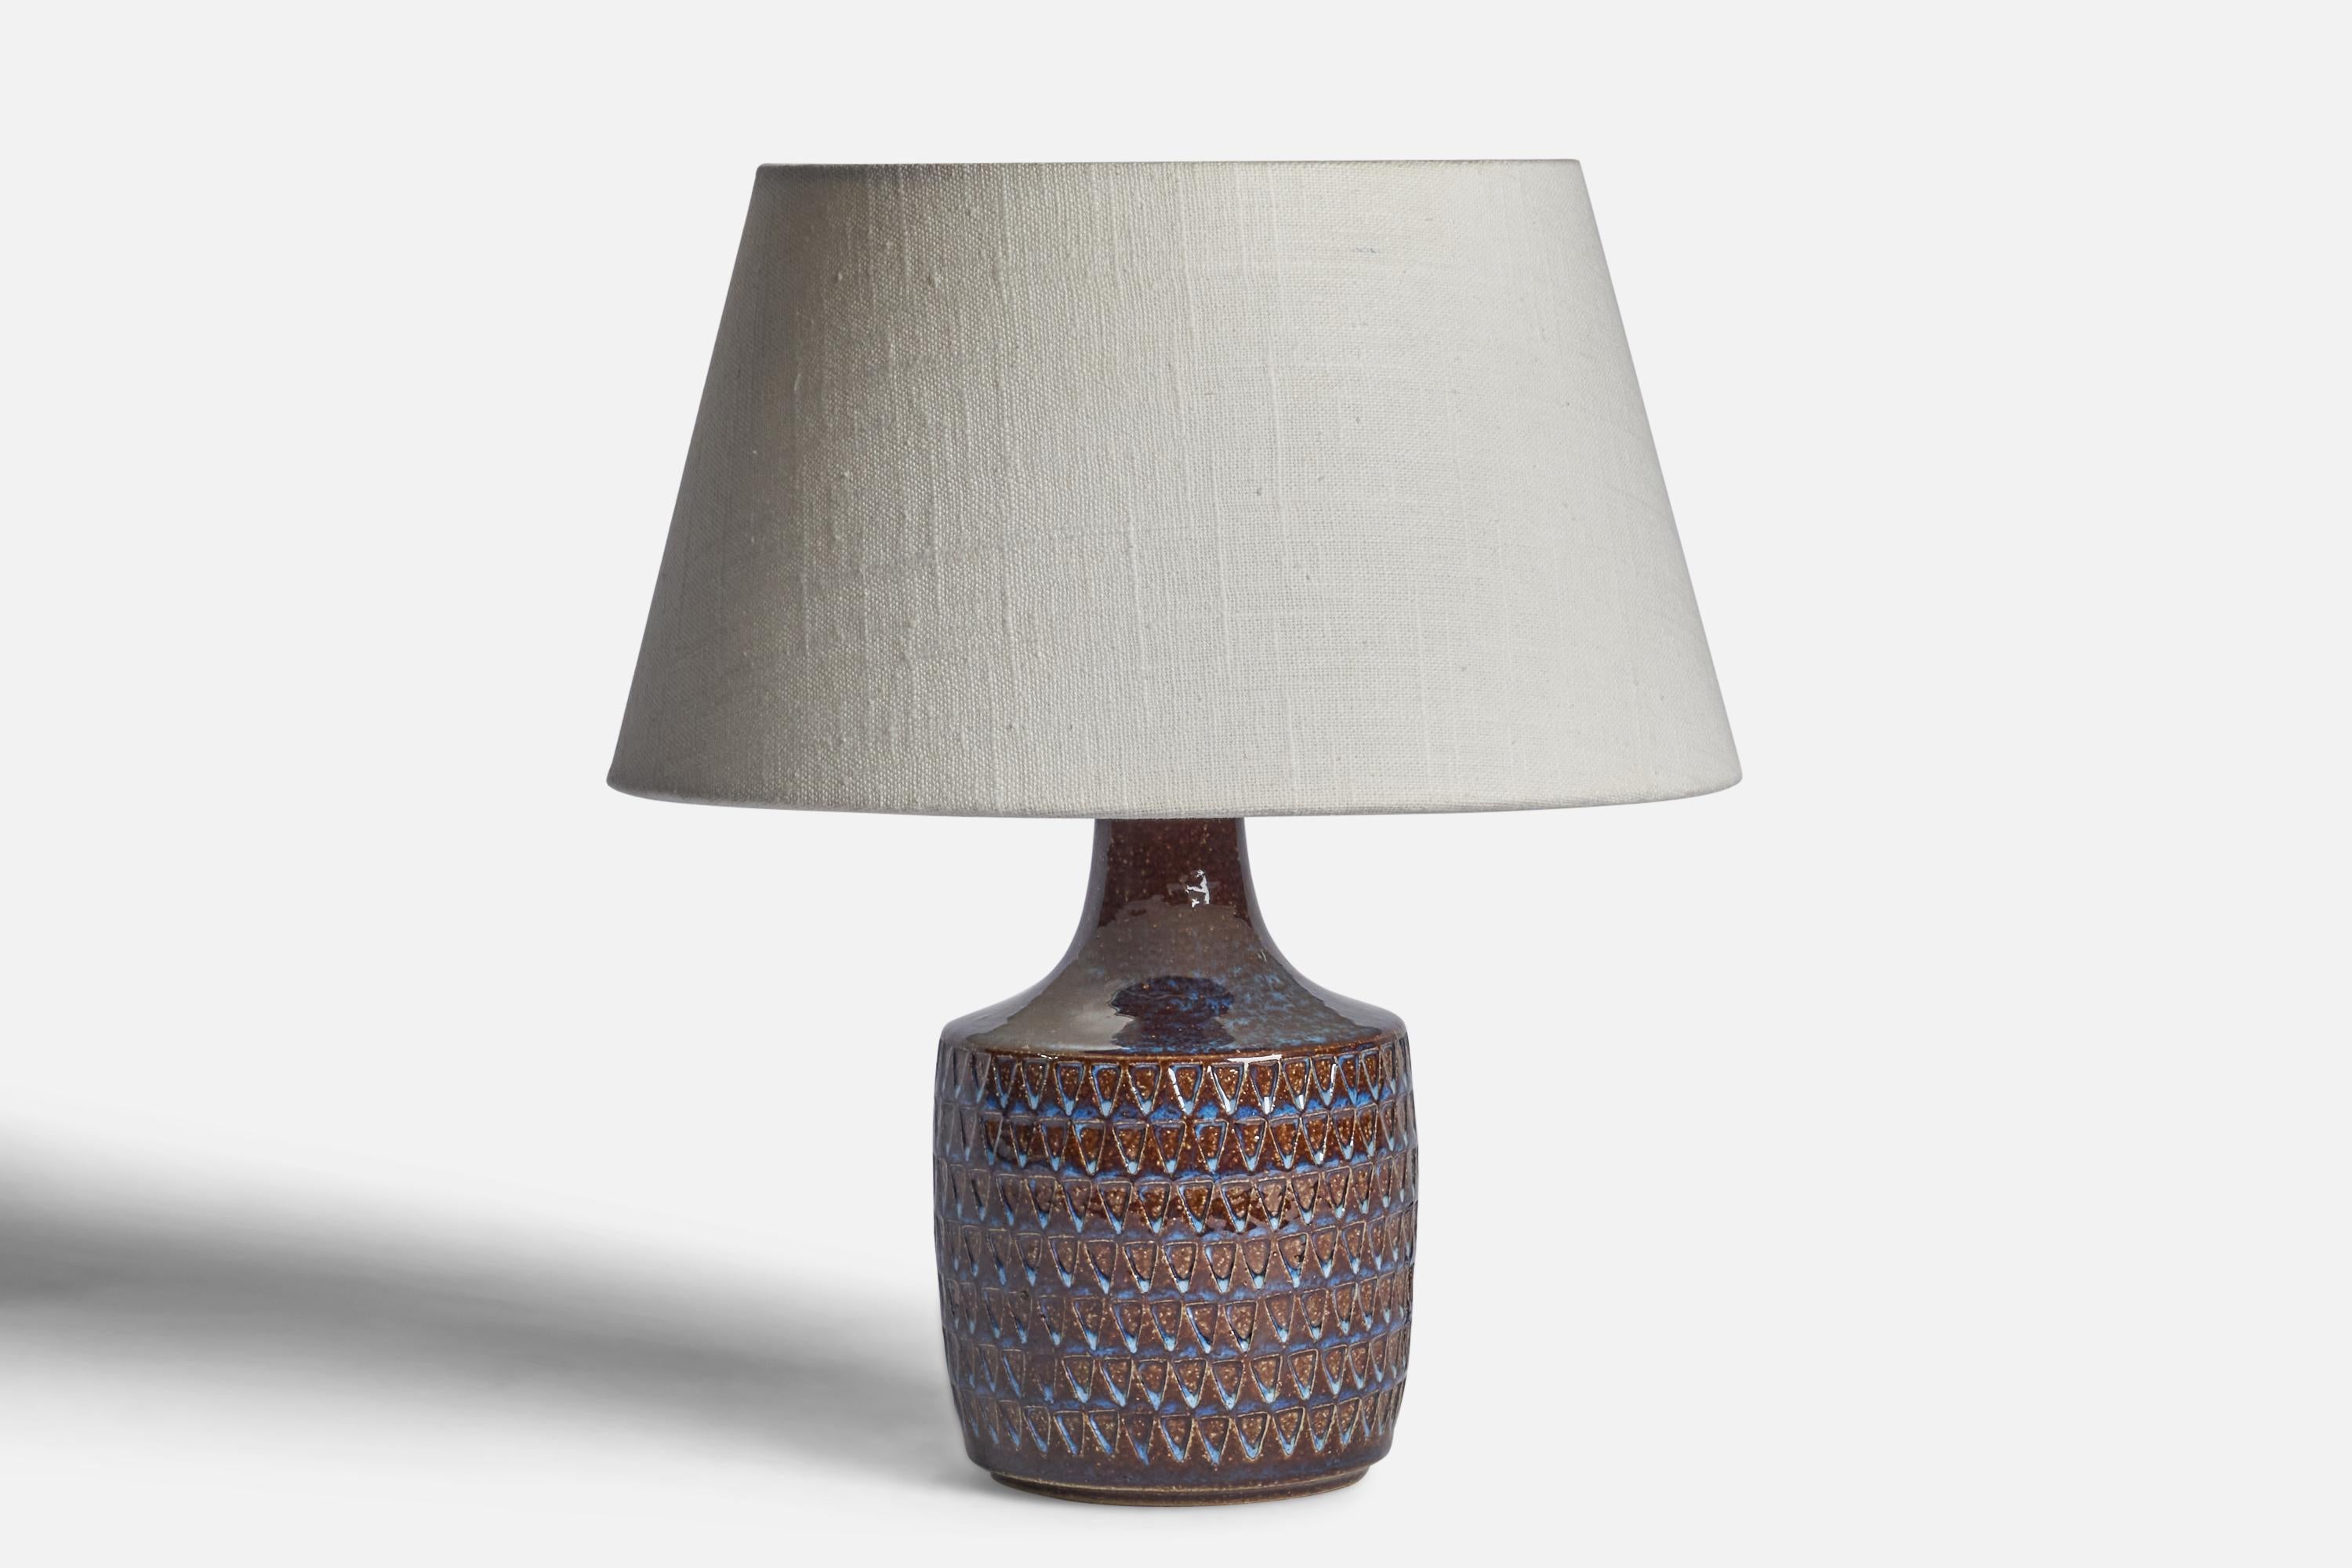 Eine Tischlampe aus blauem und braunem Steingut, entworfen und hergestellt von 
Søholm, Bornholm, Dänemark, 1960er Jahre.

Abmessungen der Lampe (Zoll): 8,65